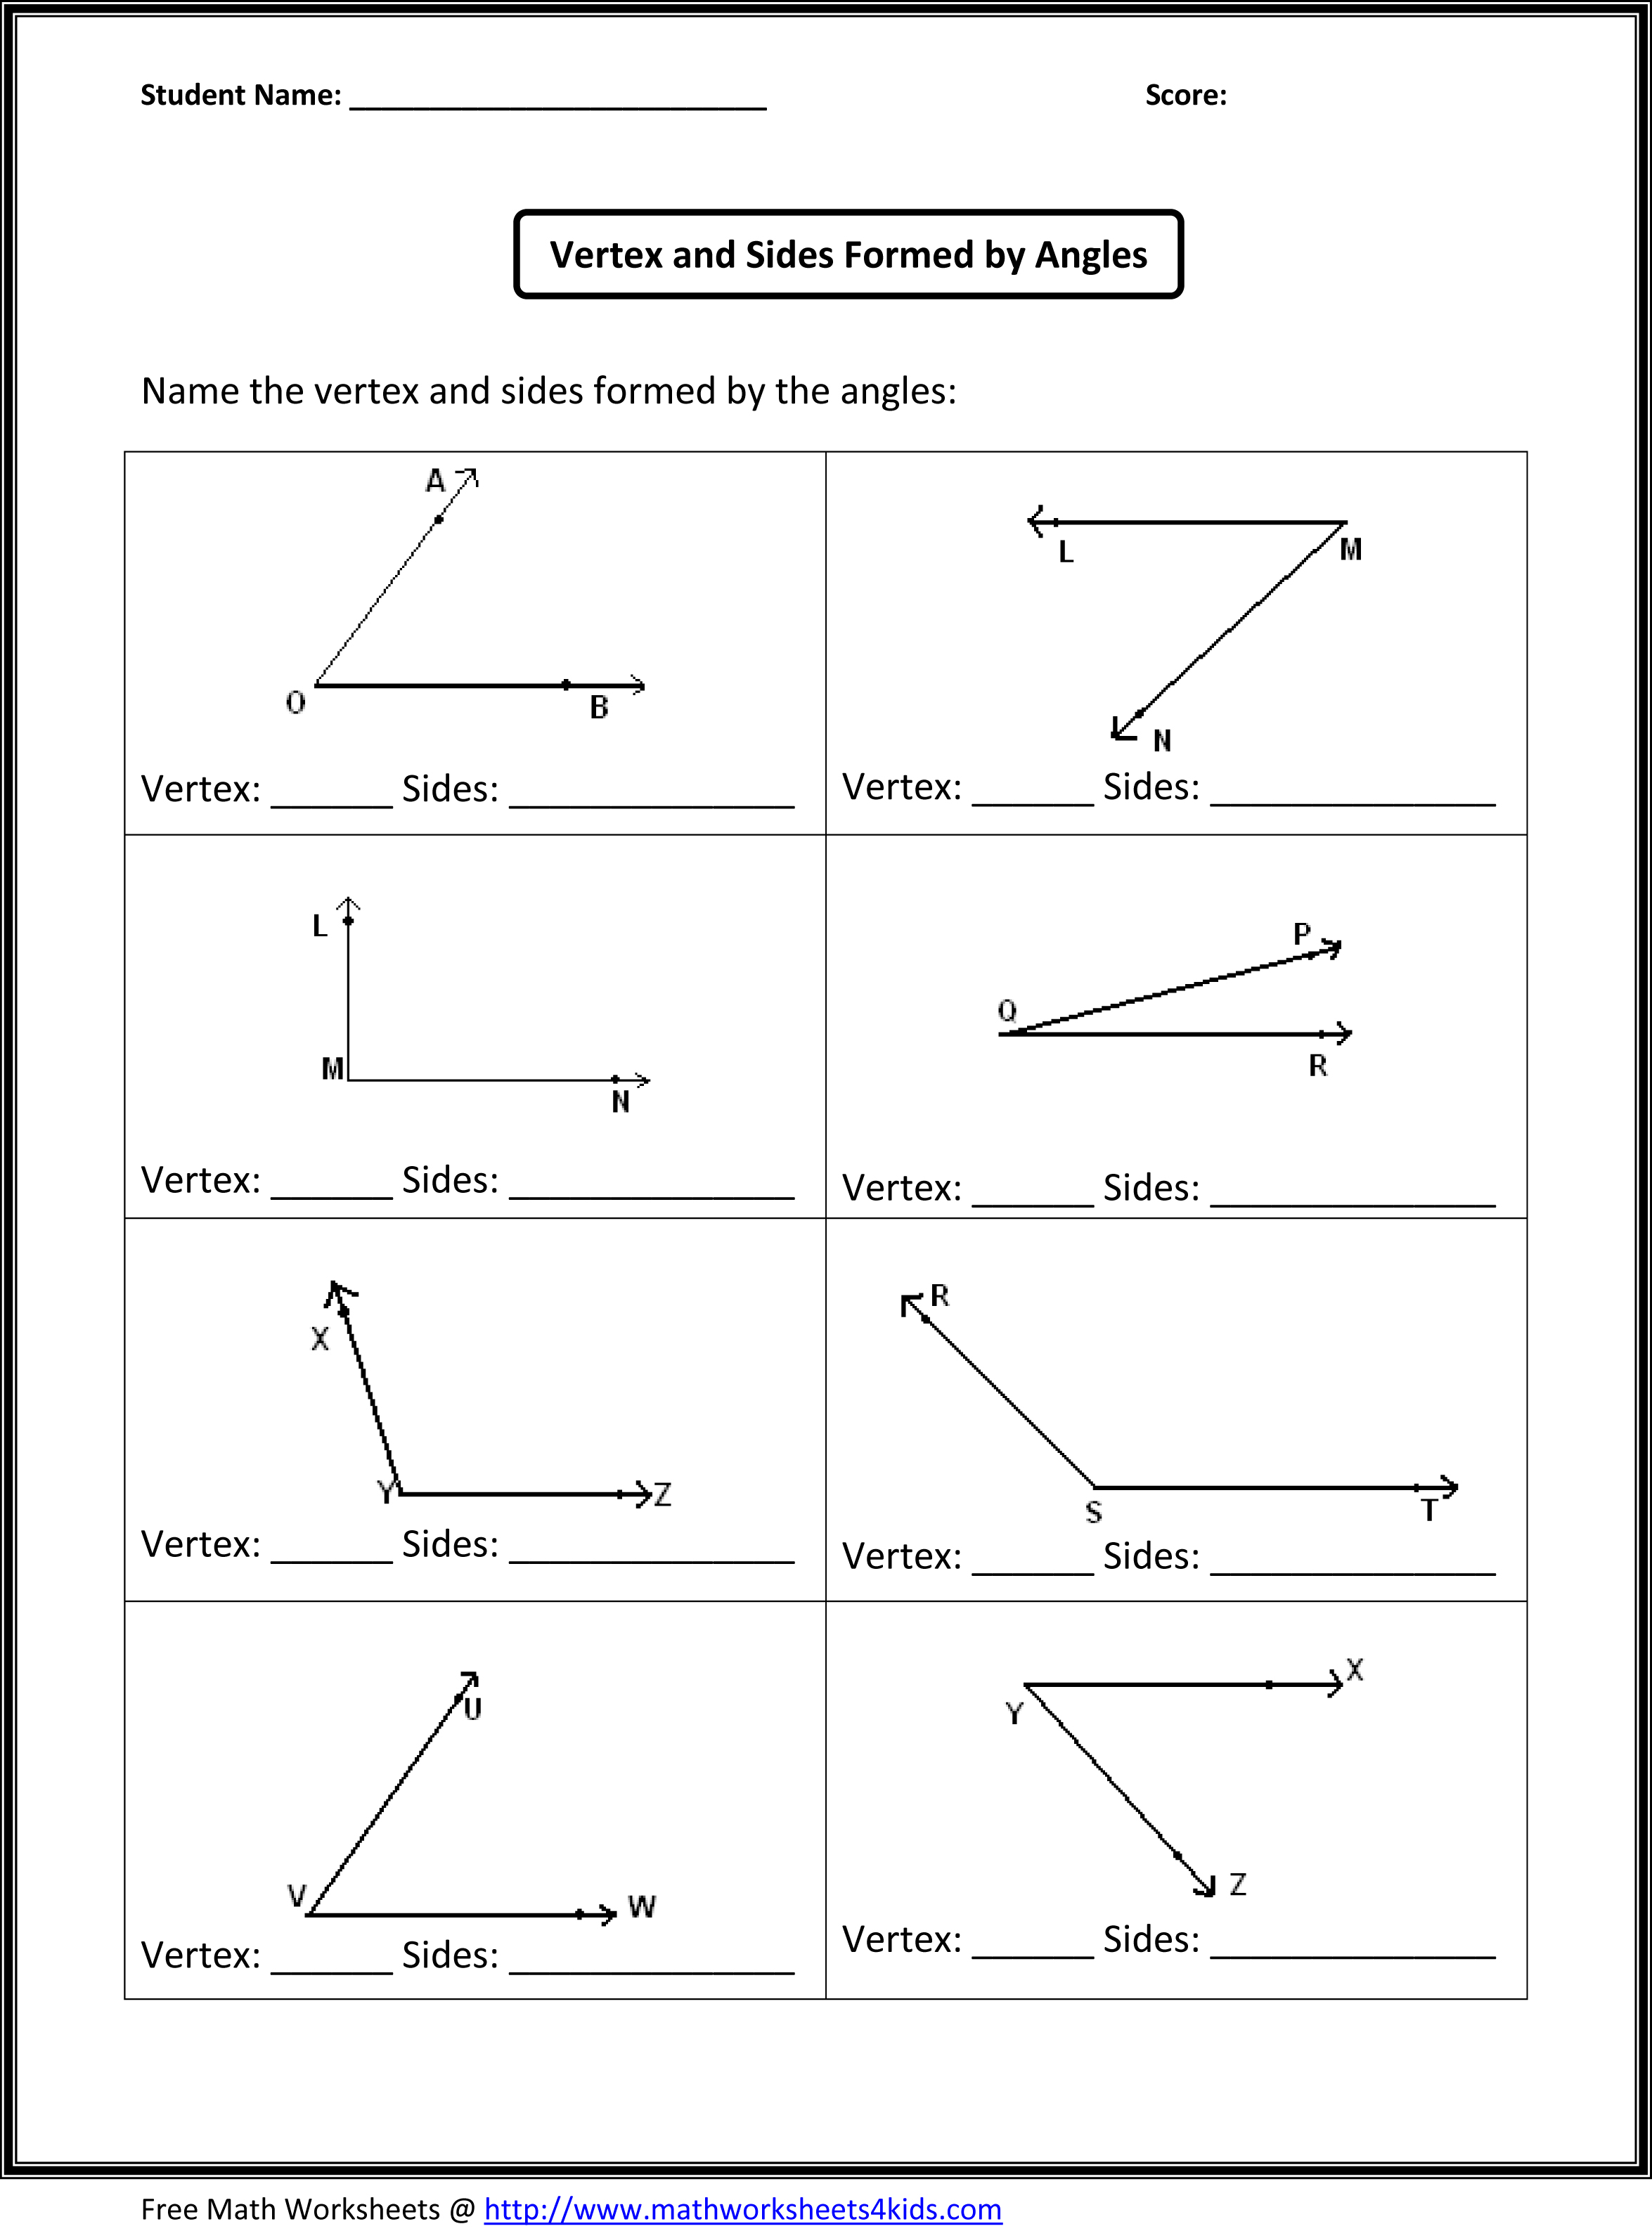 Angle Worksheets 4th Grade Image